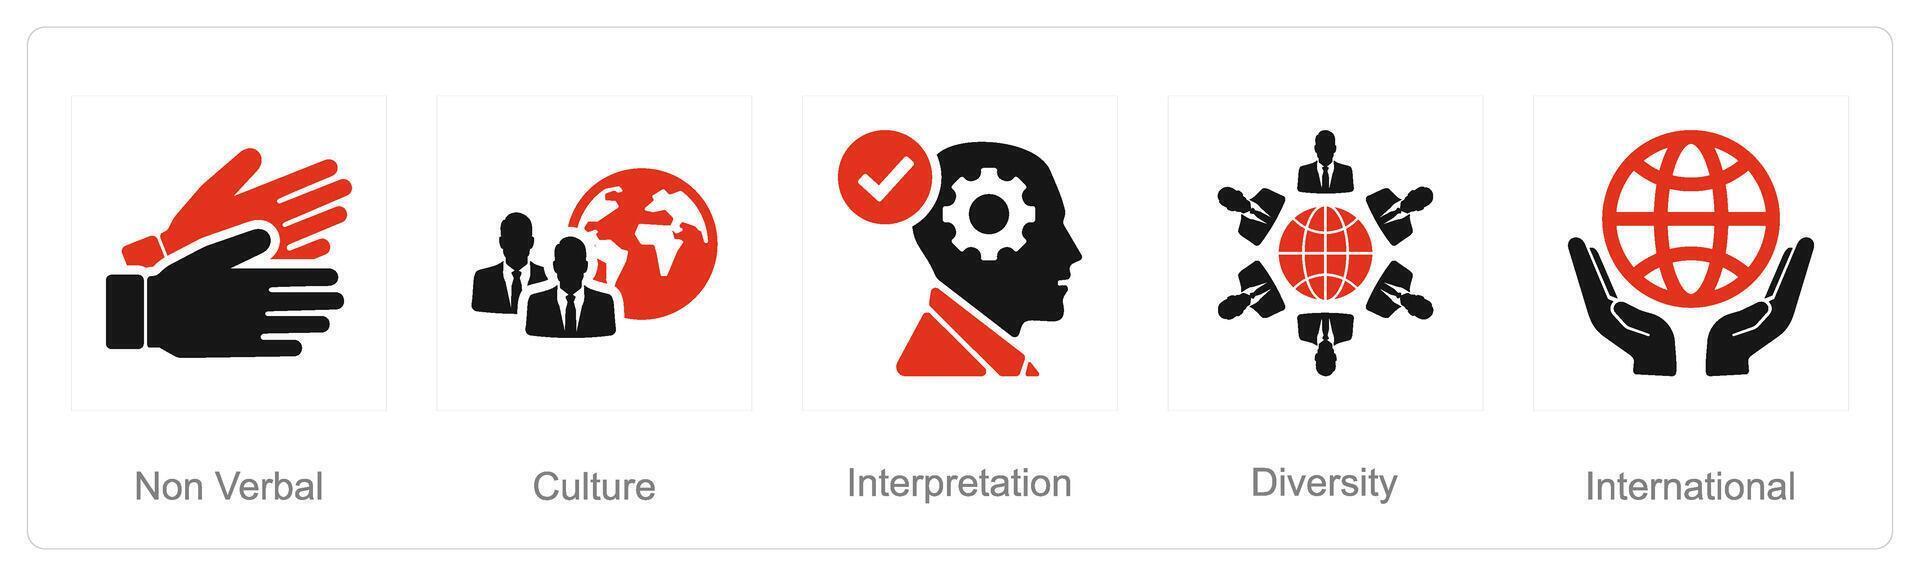 en uppsättning av 5 språk ikoner som icke verbal, kultur, tolkning vektor